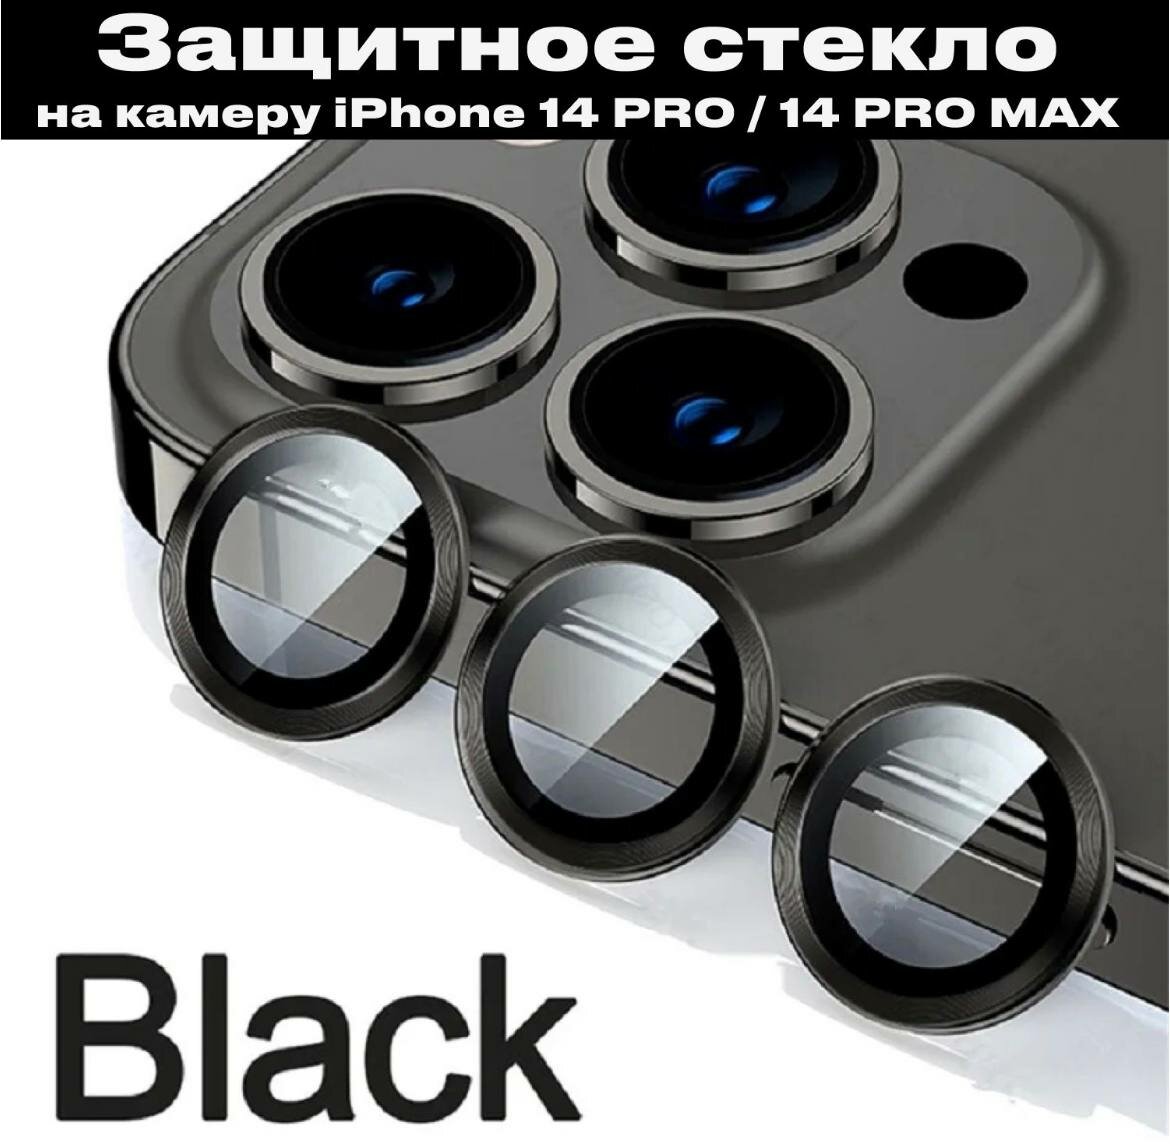 Комплект защитных стекол для камеры телефона Apple iPhone 14 Pro и 14 Pro Max / Линзы на камеру Эпл Айфон 14 Про и 14 Про Макс/черные